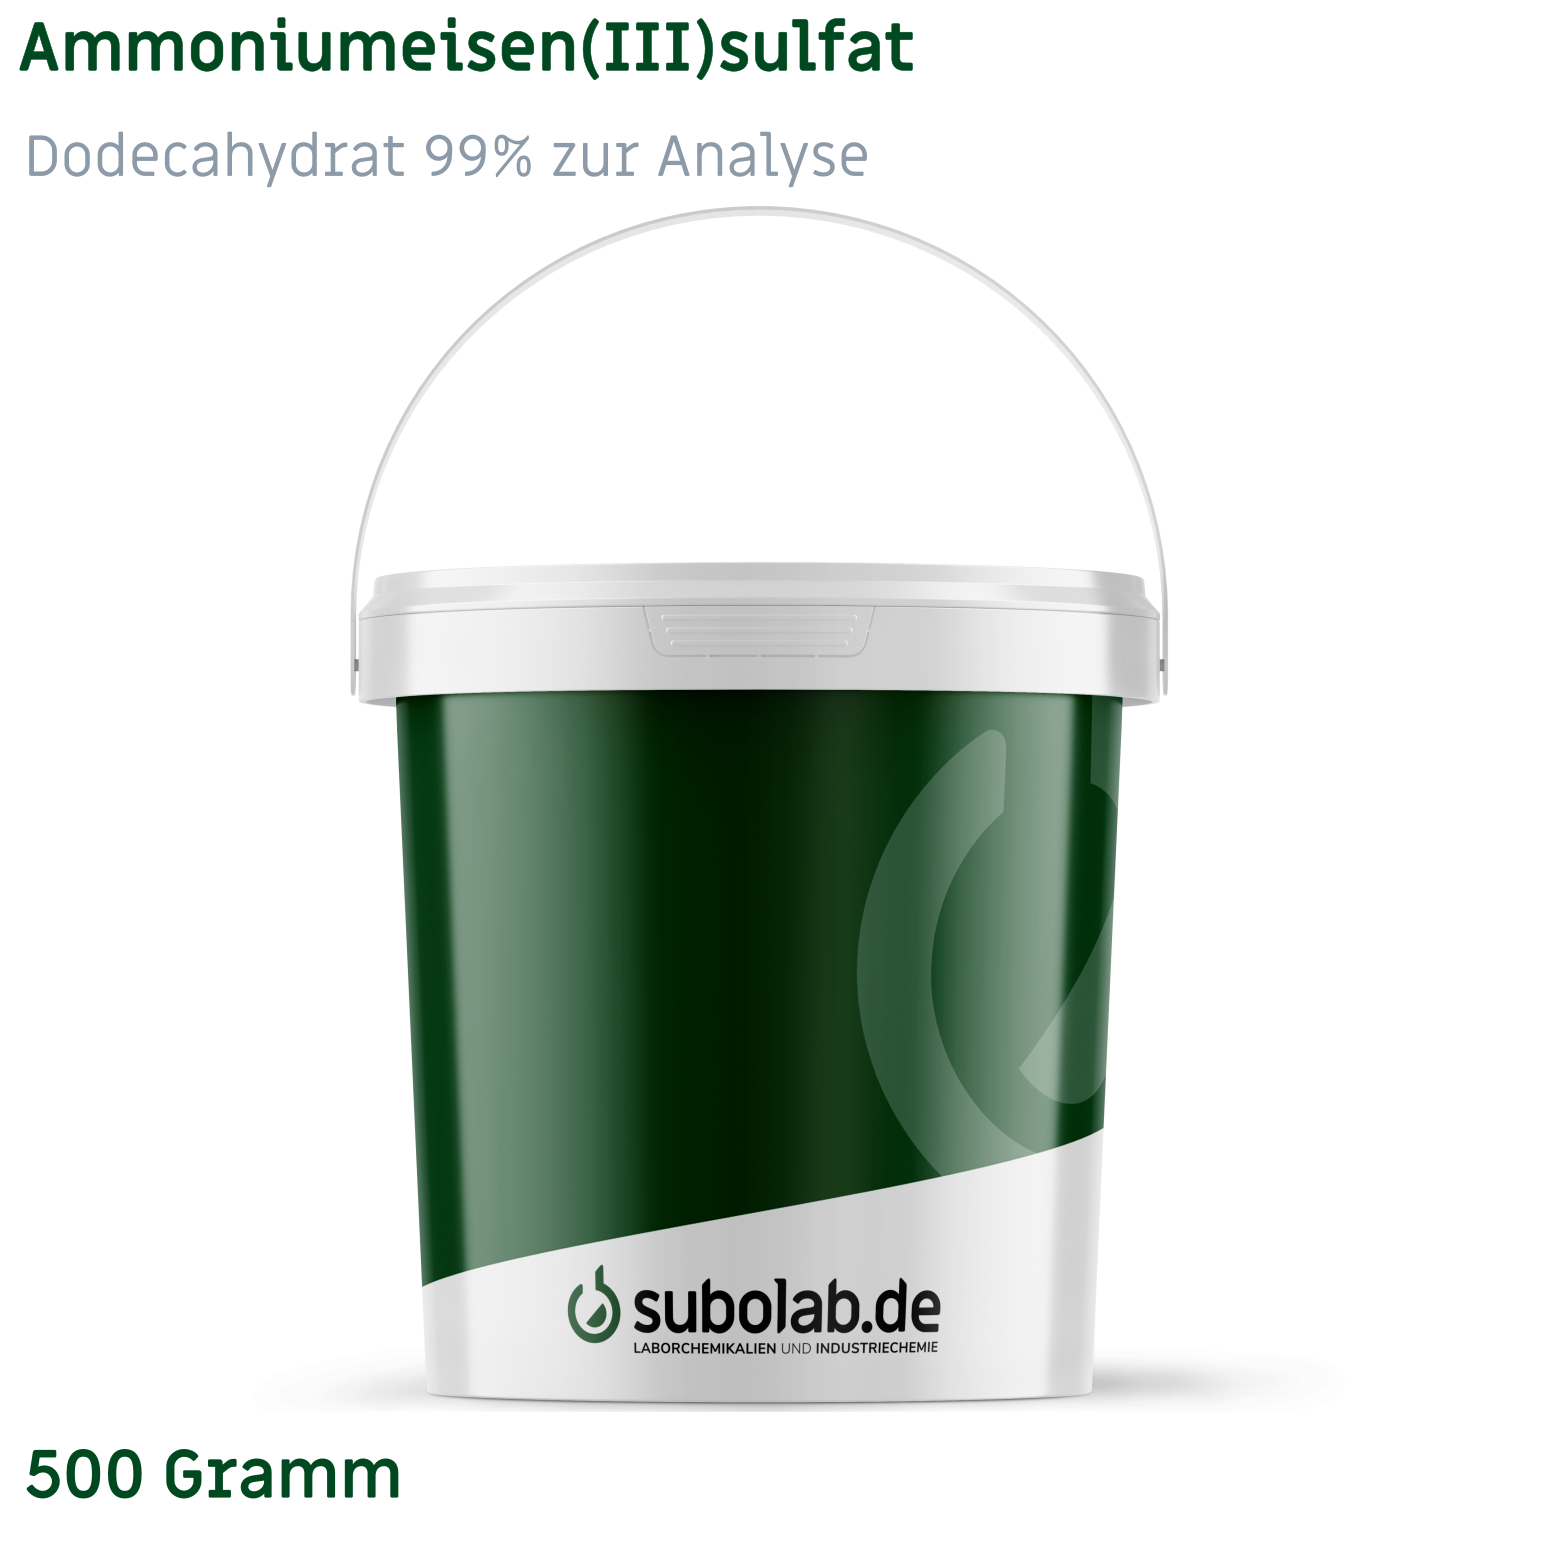 Bild von Ammoniumeisen(III)sulfat - Dodecahydrat 99% zur Analyse (500 Gramm)